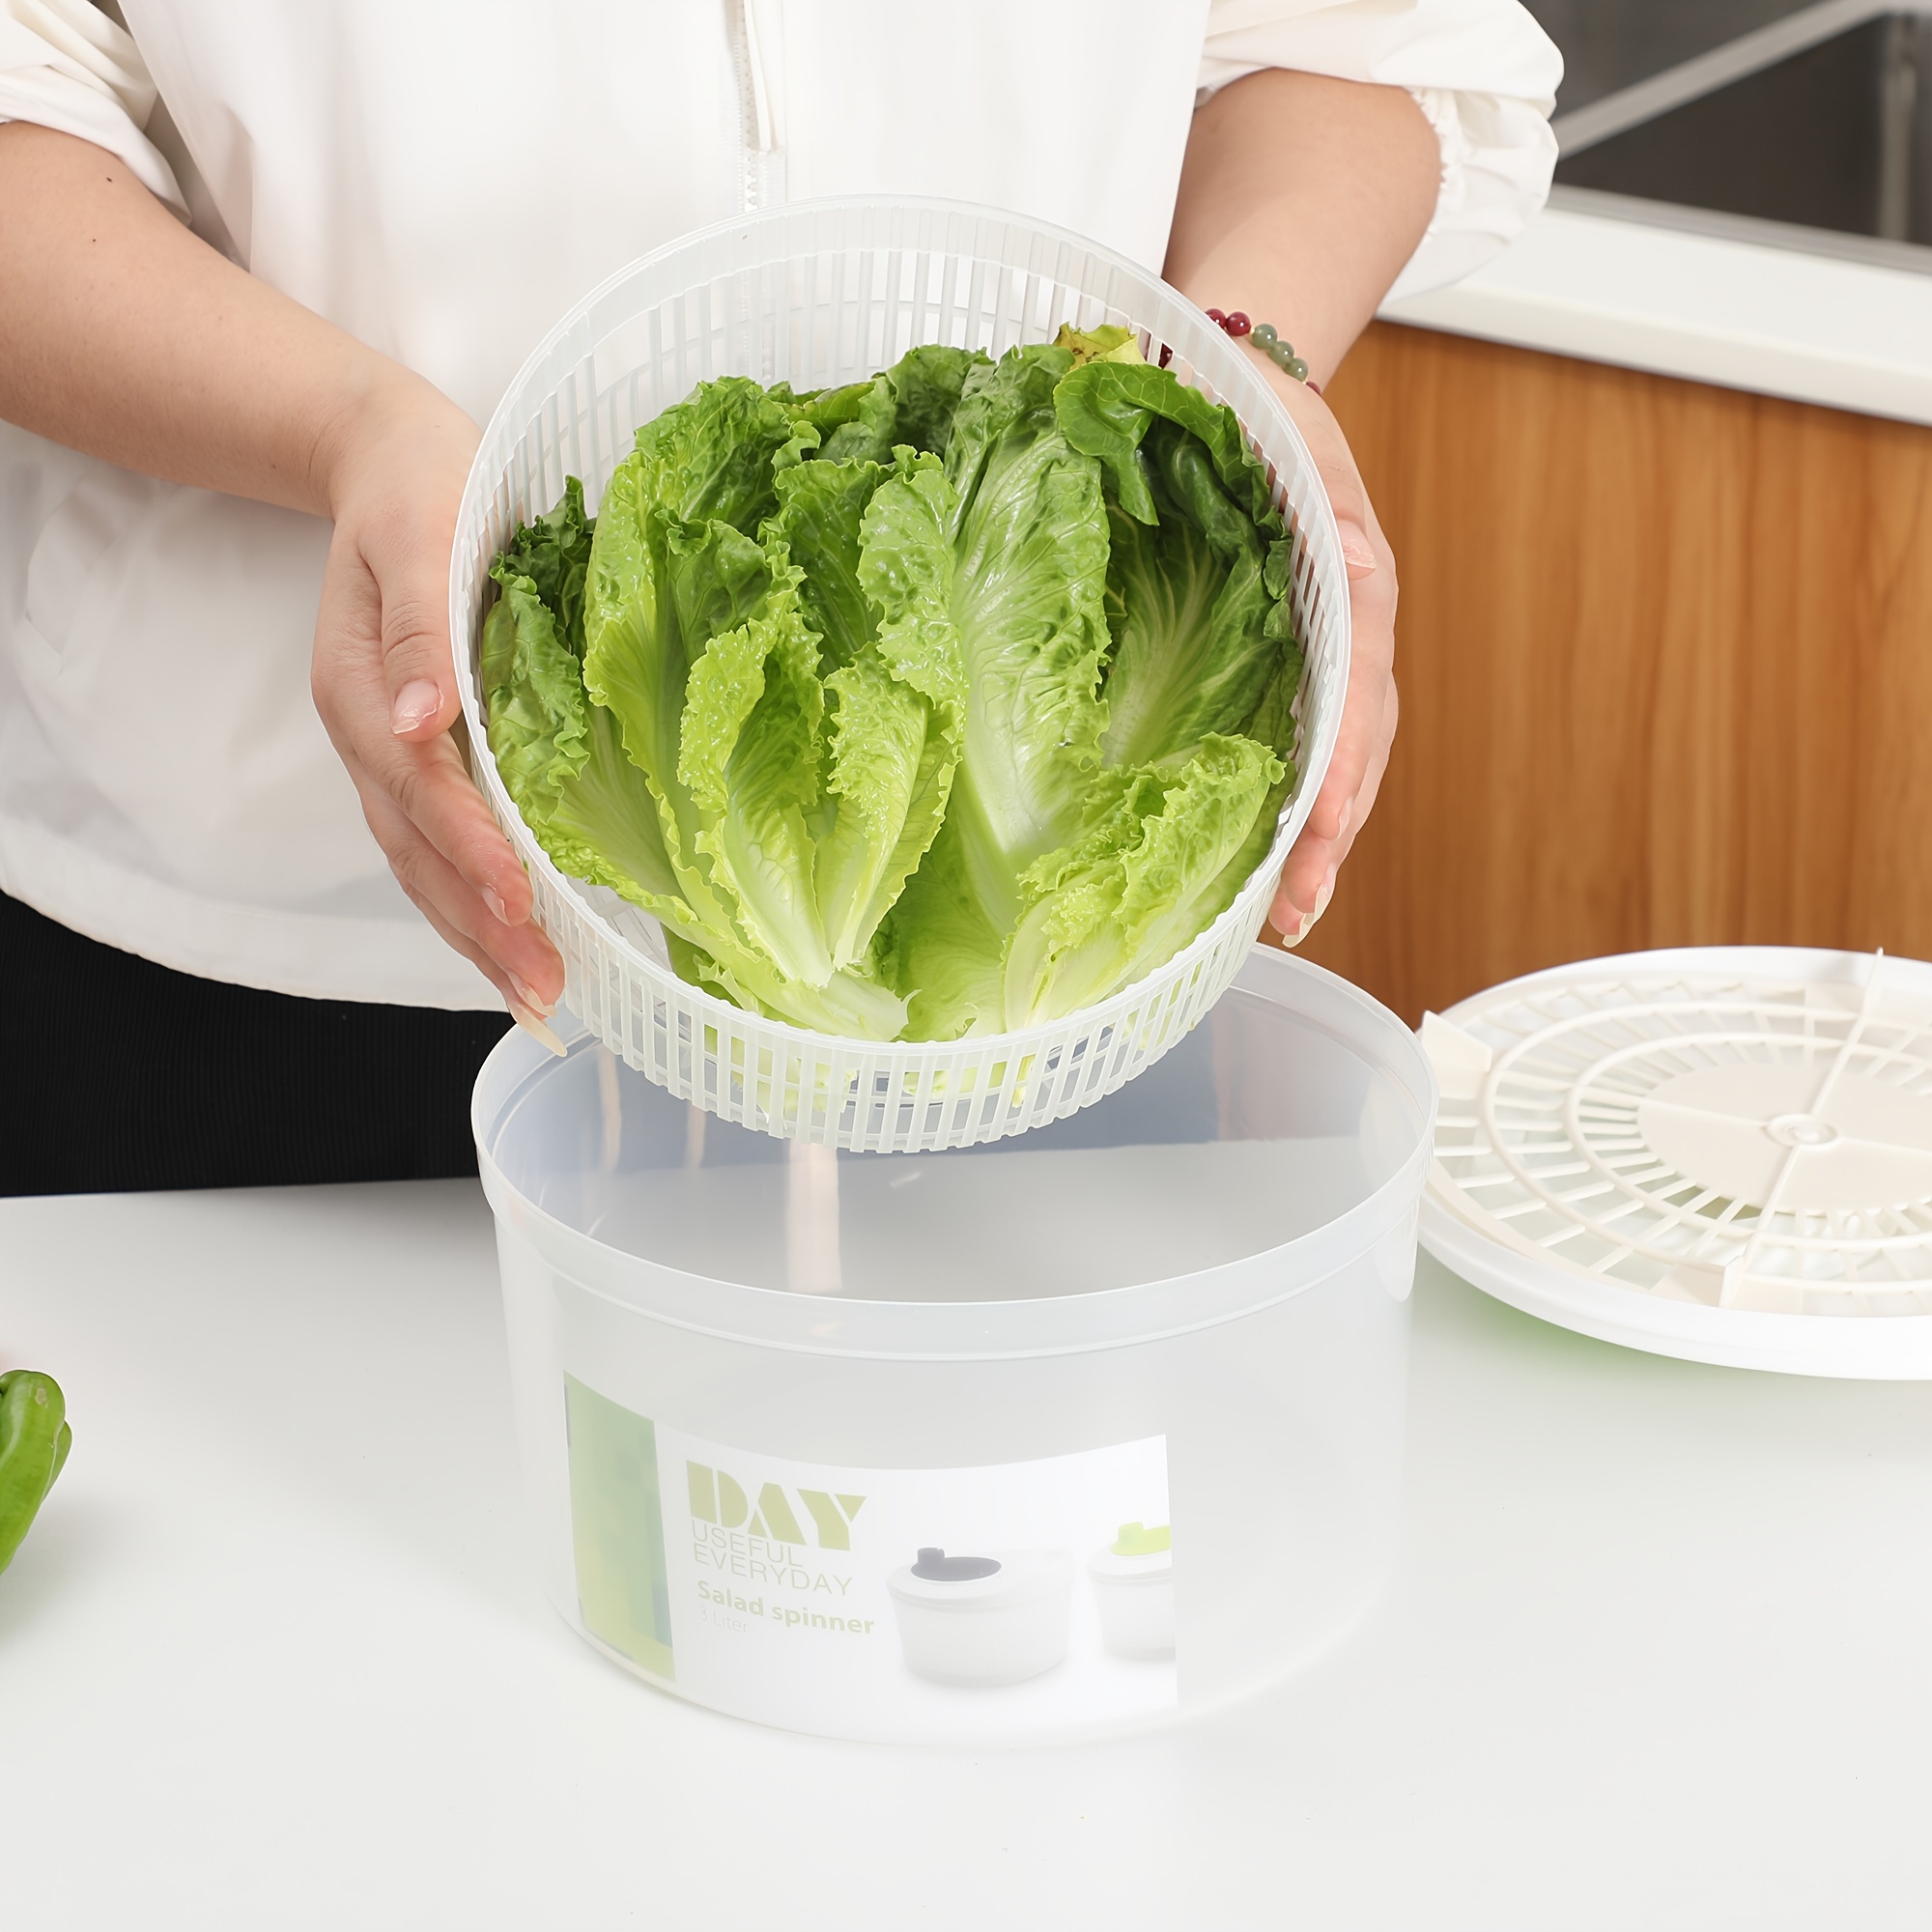 BAODELI Capacity 3L Salad Spinner Vegetable Washer Fruit Veggie